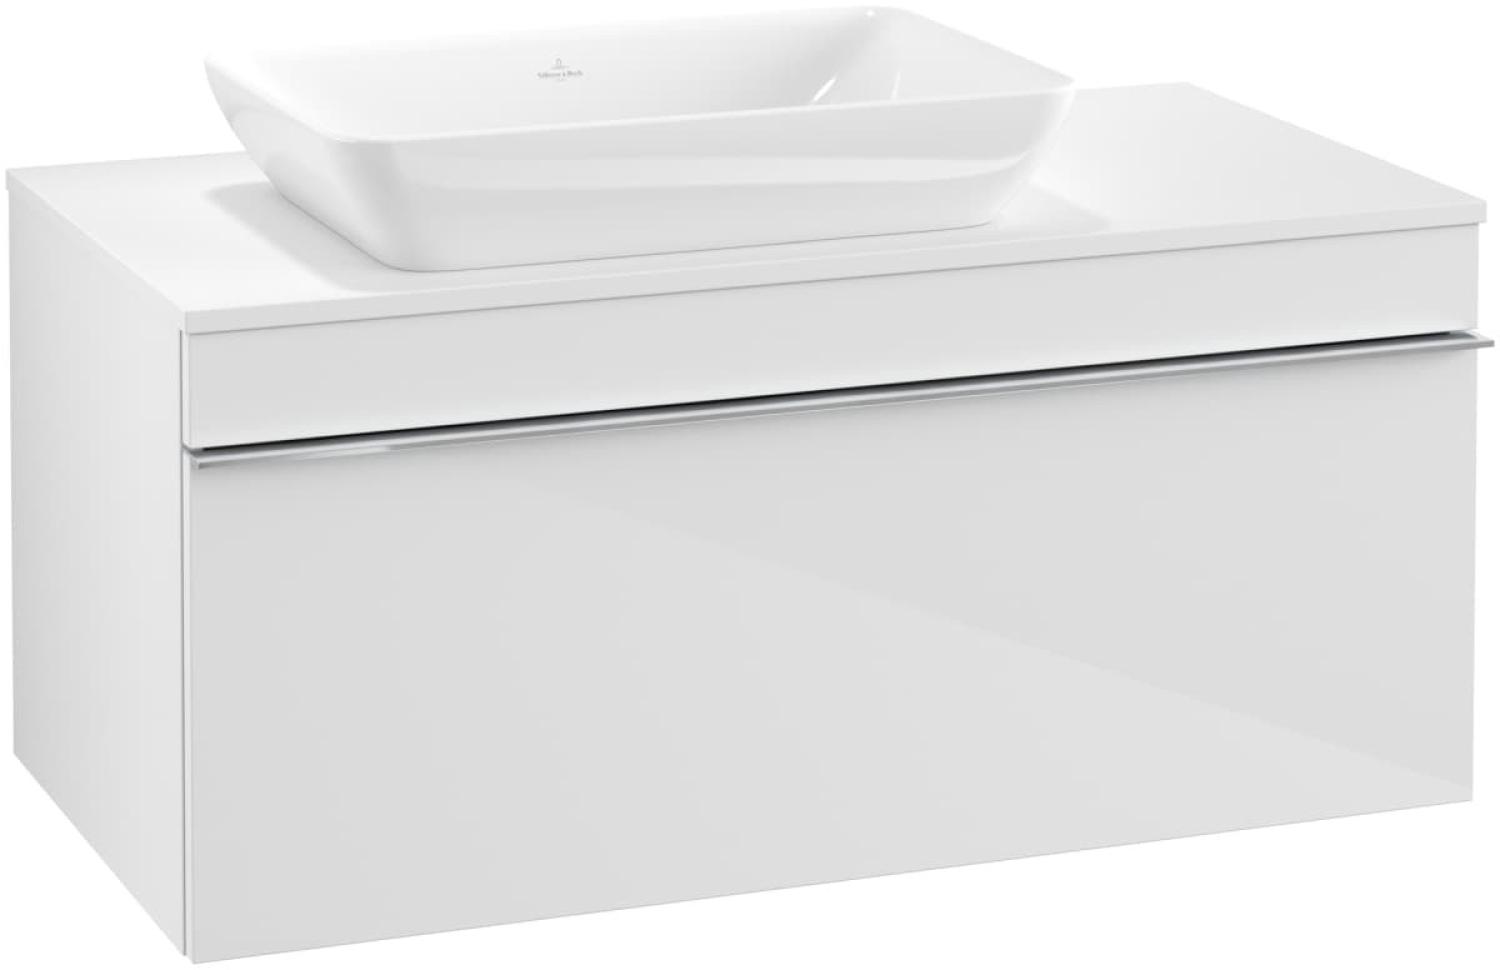 Villeroy & Boch VENTICELLO Waschtischunterschrank 95 cm breit, Weiß, Griff Chrom, für Becken links Bild 1